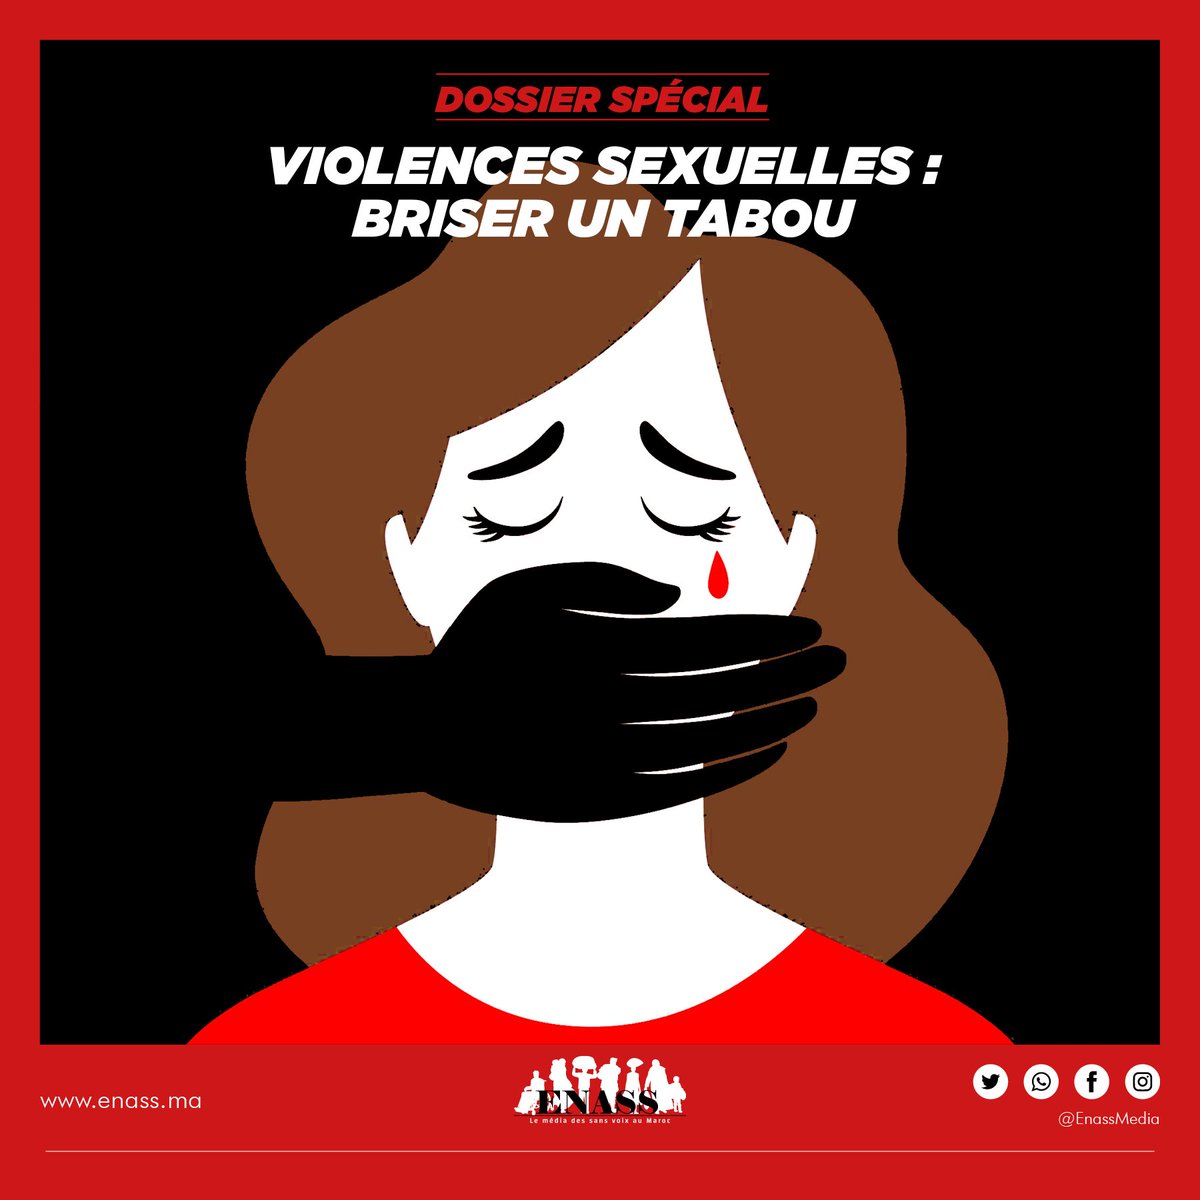 🔴⚫Enass vous présente à partir d’aujourd’hui son dossier spécial sur les violences sexuelles 
📌«Violences sexuelles: Briser un tabou»
⏳Soyez au rendez-vous!
#ENASS #médiadessansvoix #violencesexuelles #NoRape #tabou #Maroc